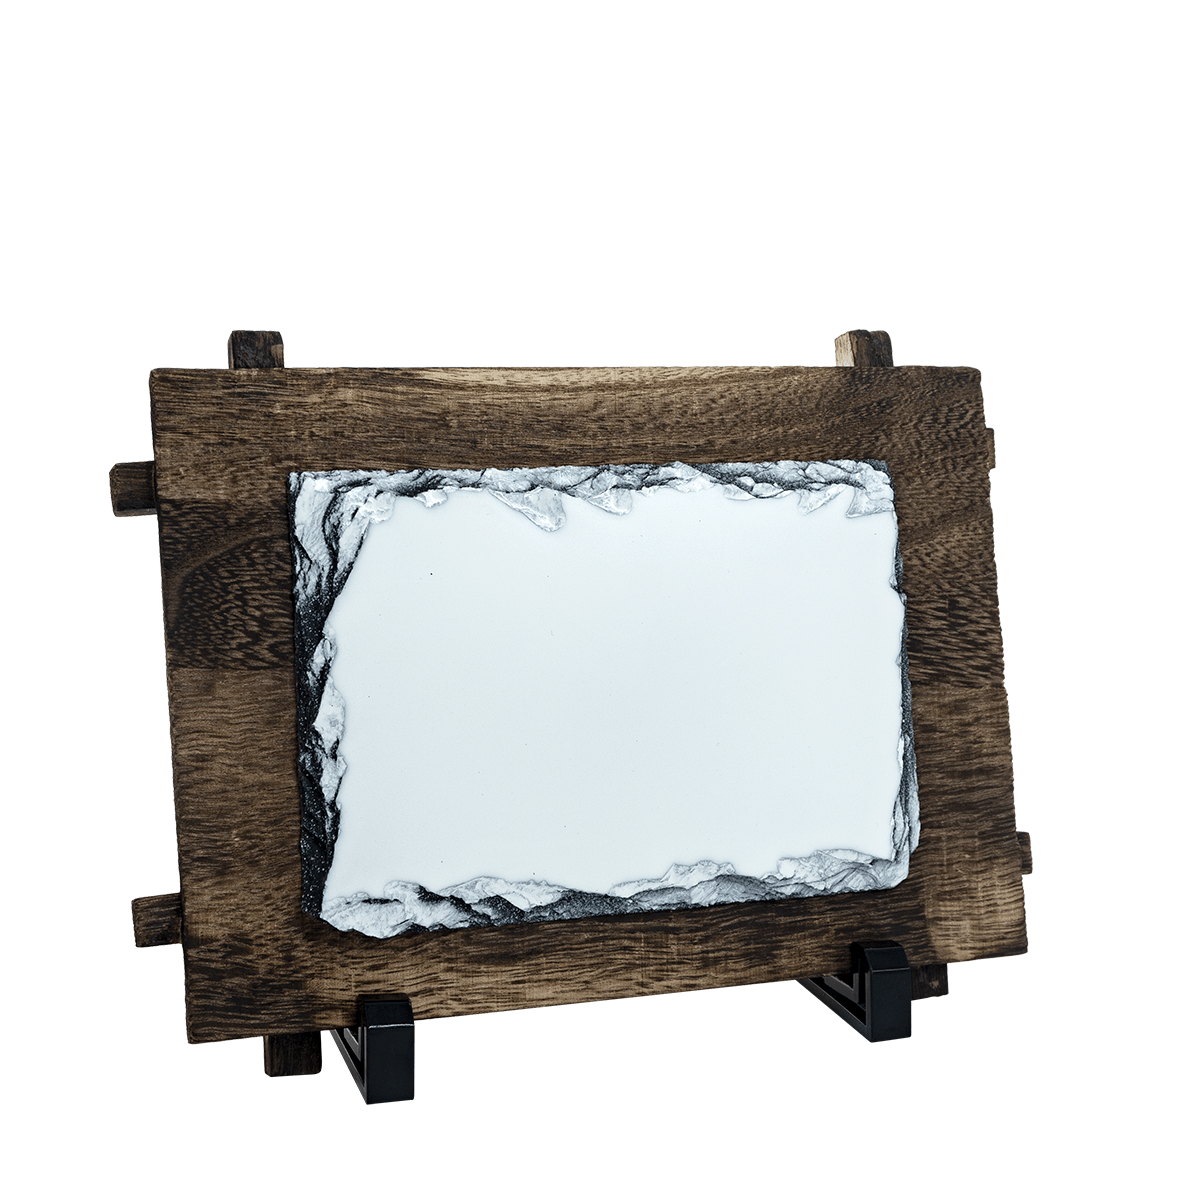 PIEDRA WOODEN FRAME 12*17cm, Piedra corrugada con base, marco rústico de madera para sublimar imágenes.